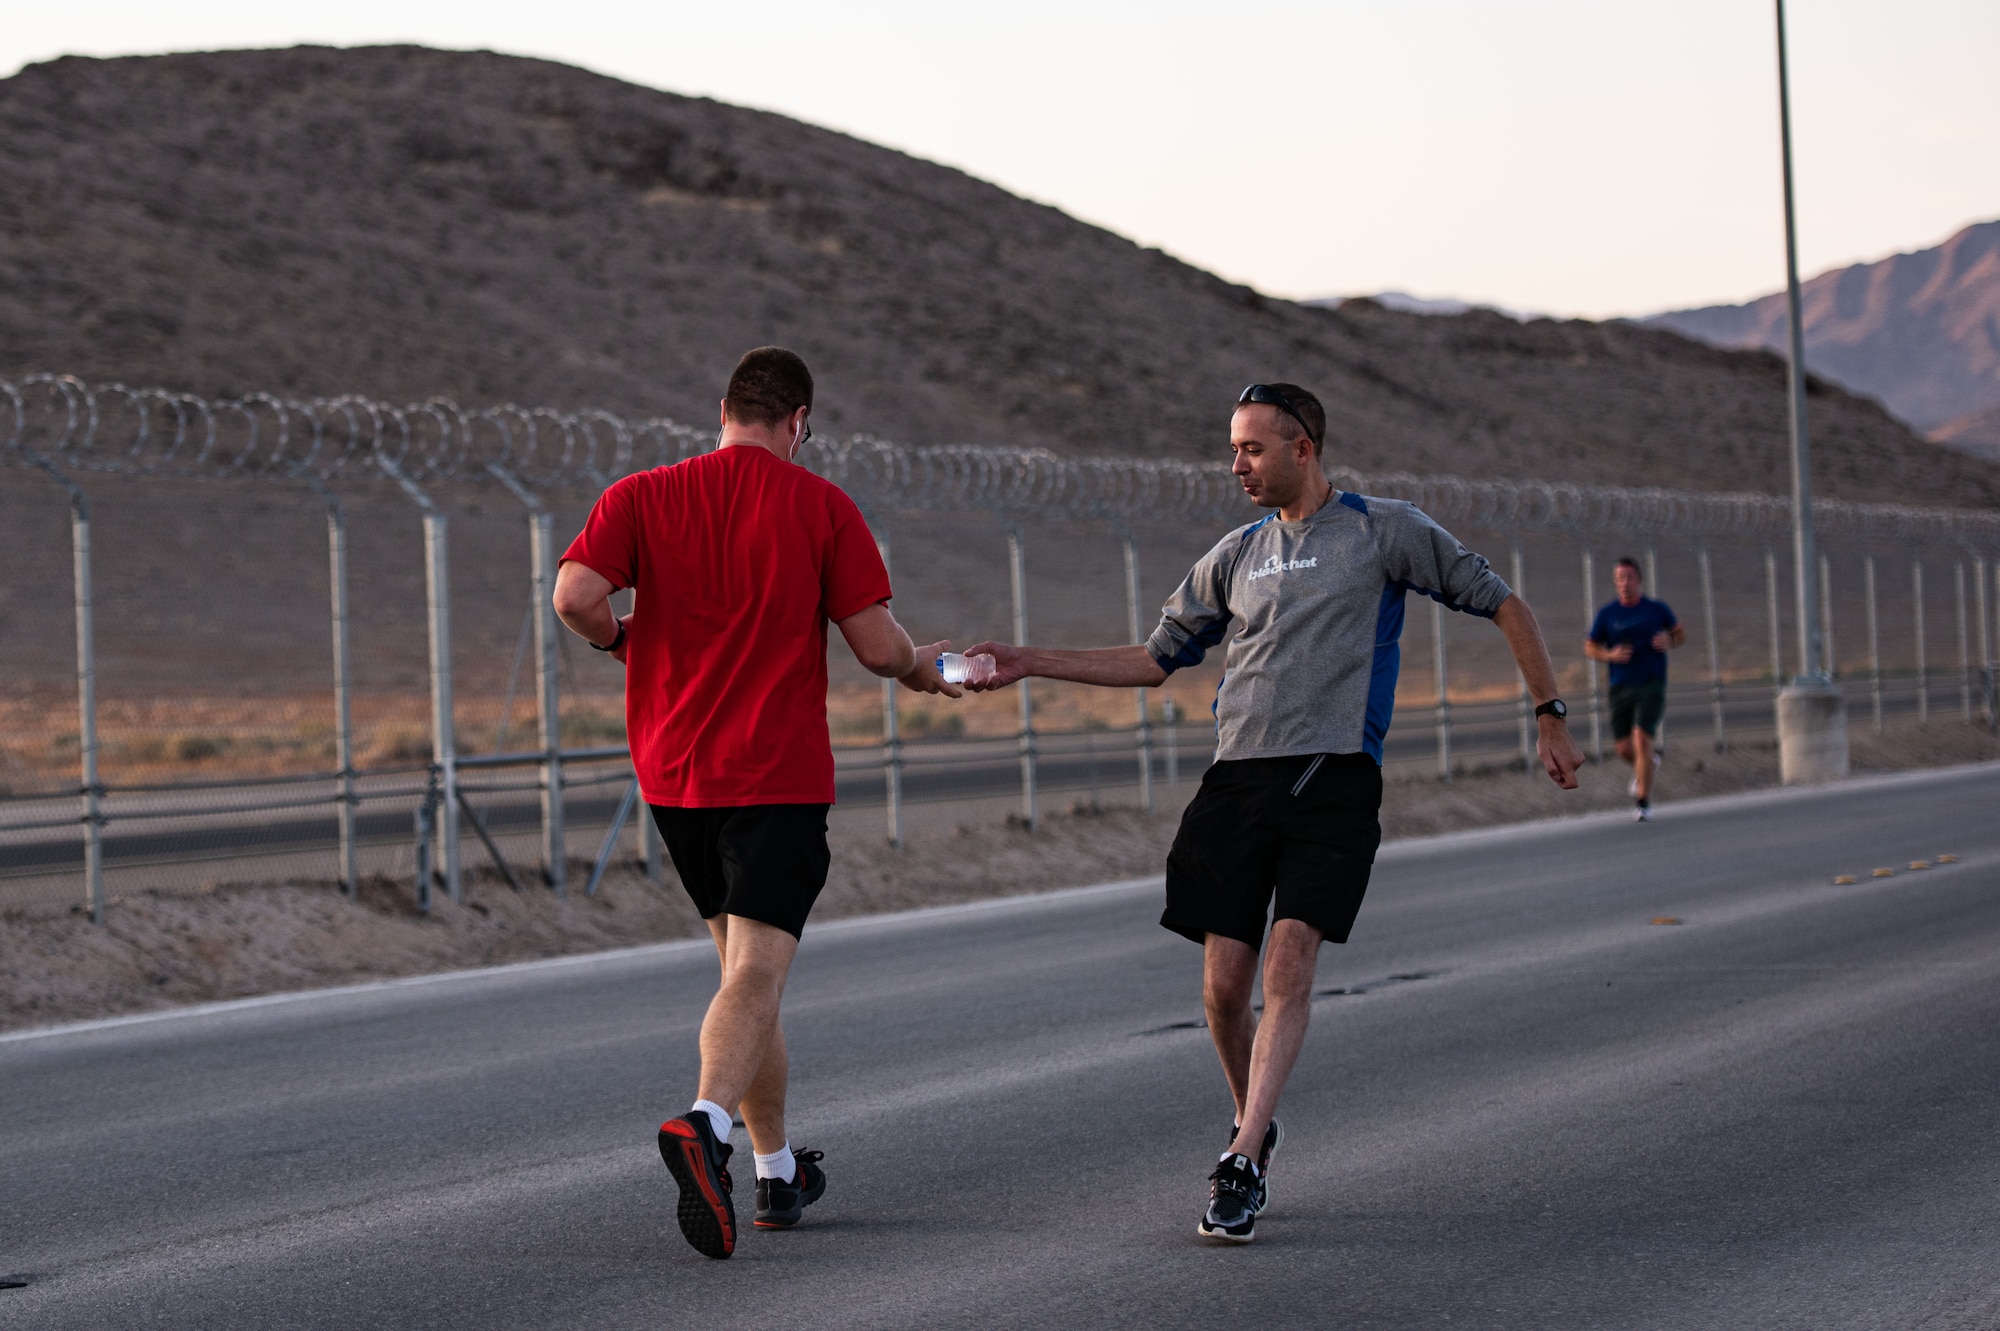 An airman gives a runner a water bottle as he runs past.